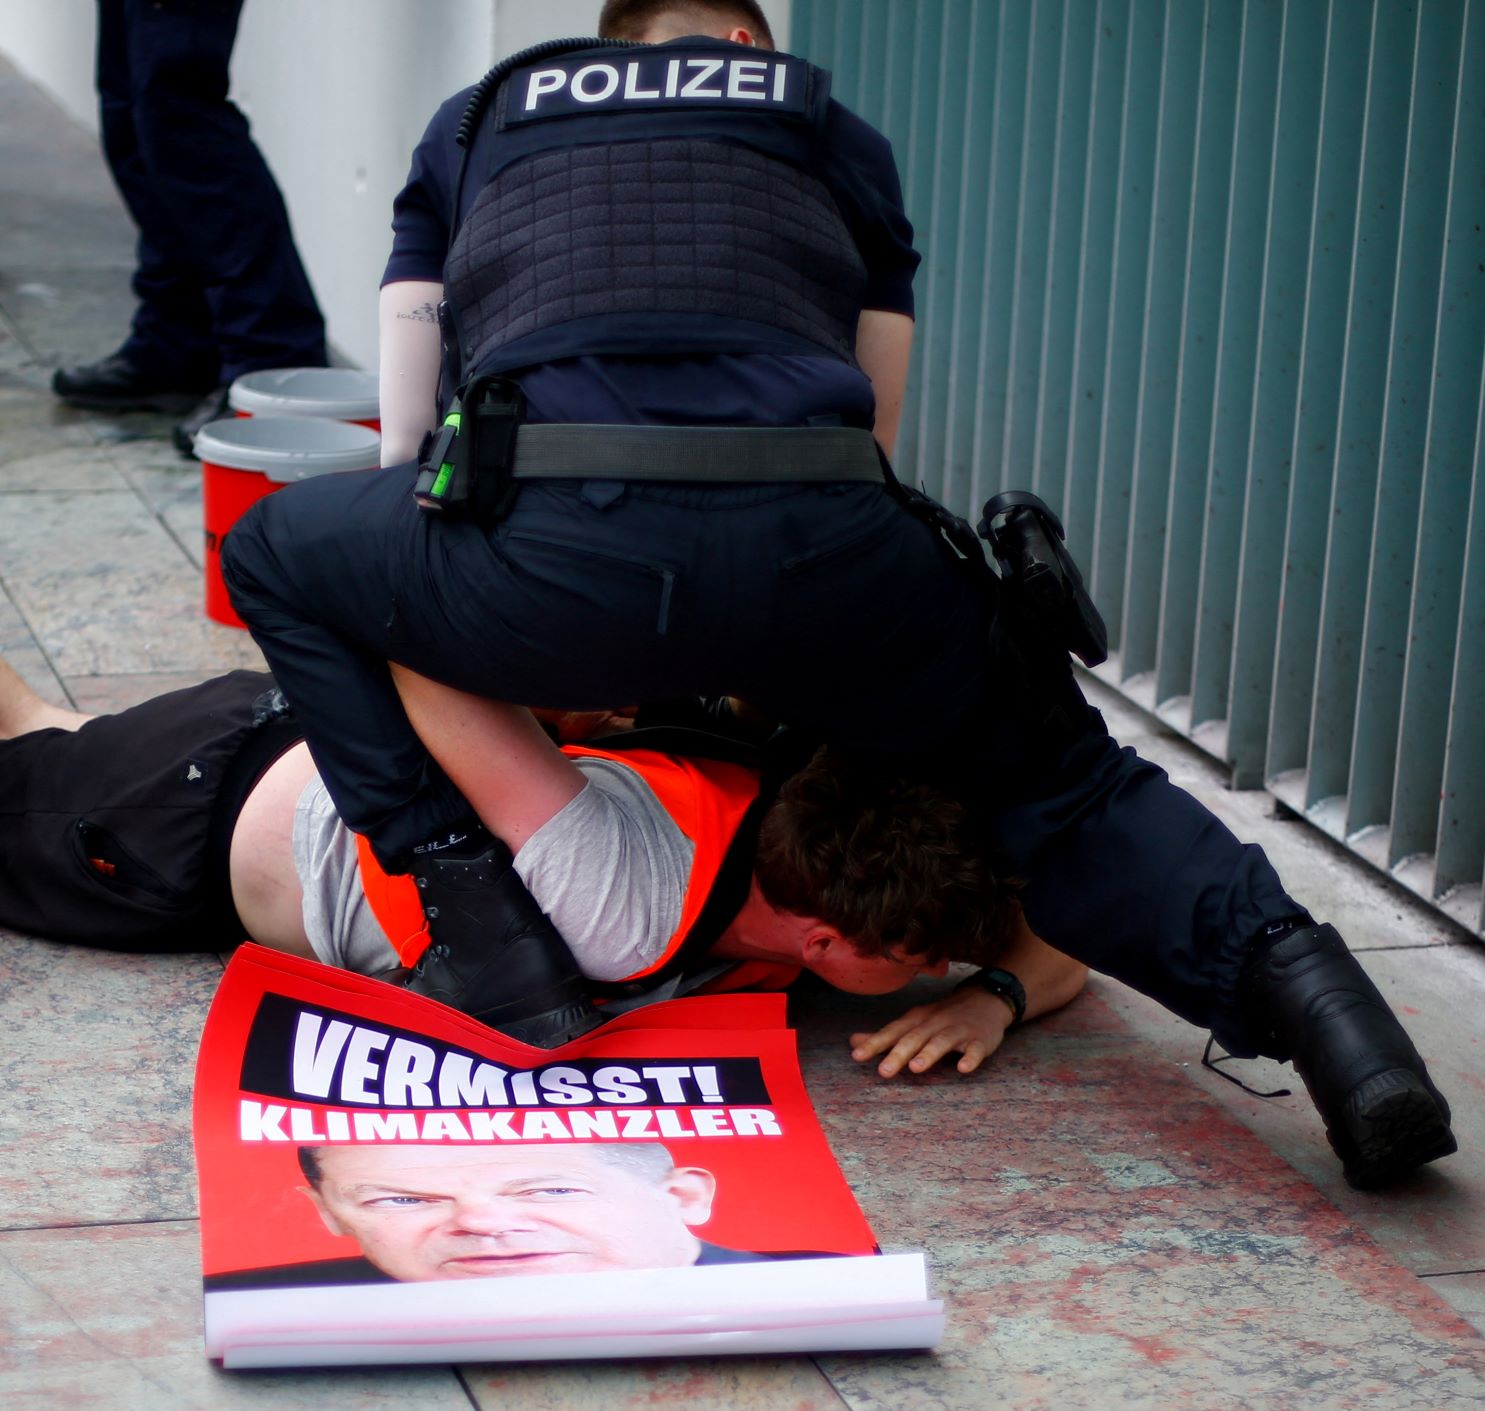 ضابط شرطة يحتجز أحد نشطاء حركة الجيل الأخير الذي رفع يافطة عليها شعار "أوقفوا جنون الوقود الأحفوري" أمام مقر المستشارية الألمانية في برلين بتاريخ 25 يونيو 2022 